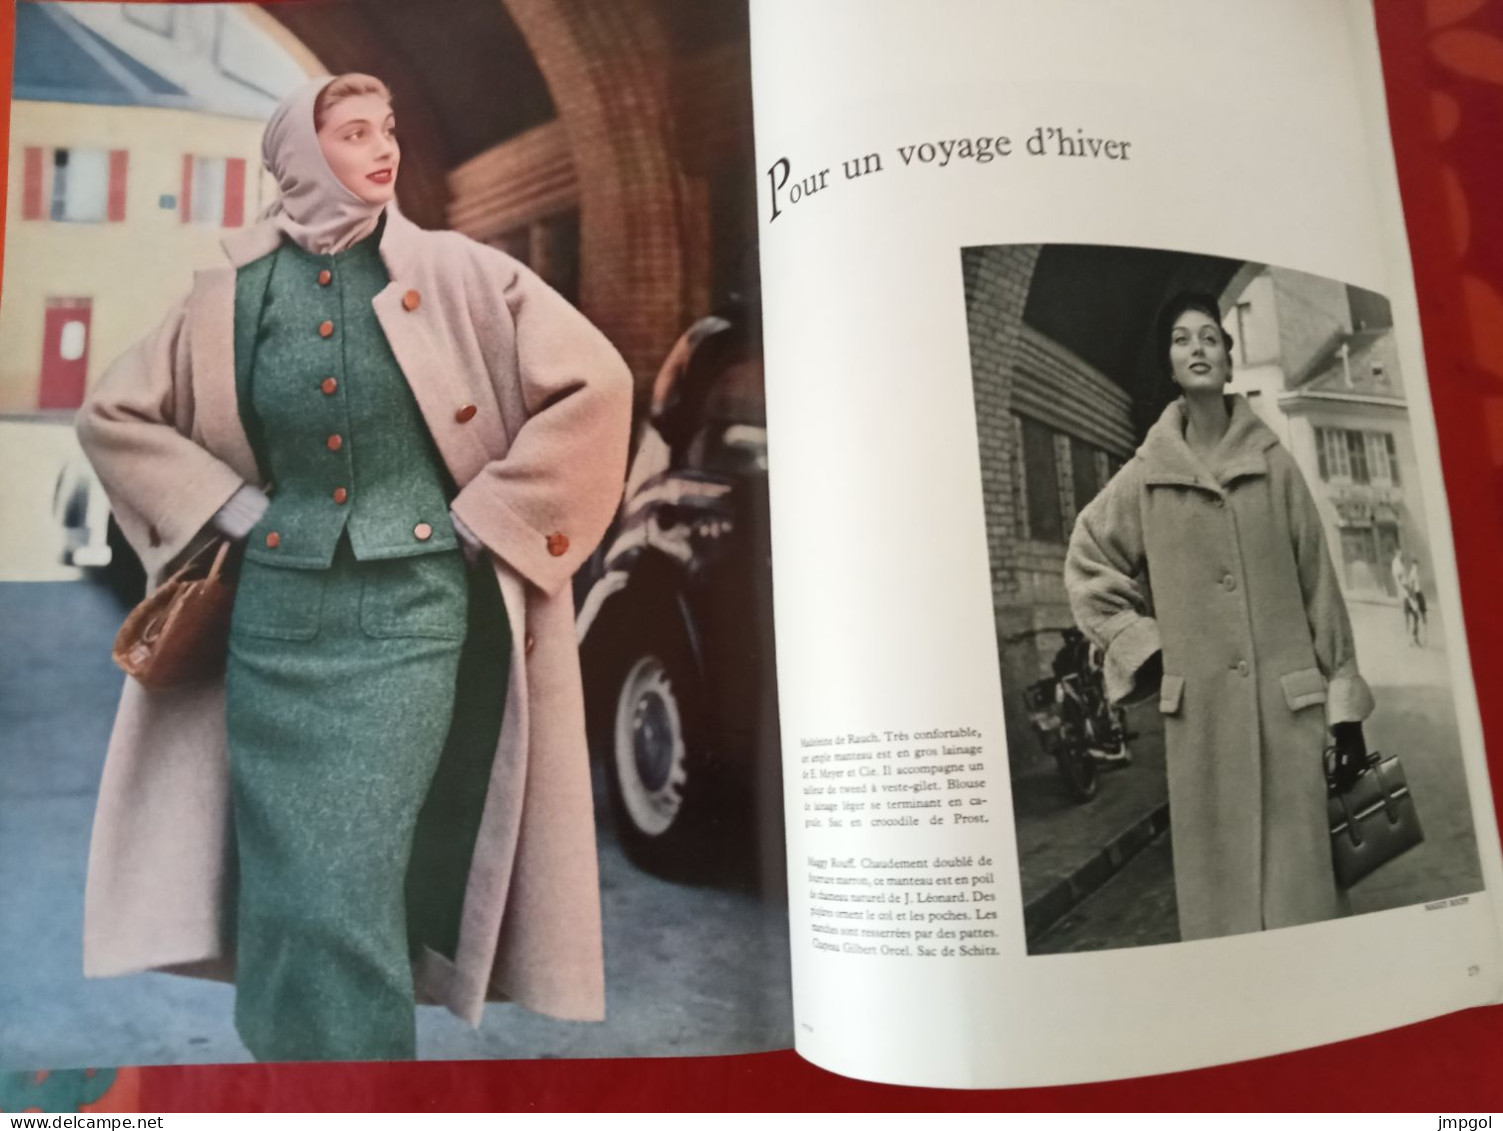 Officiel de la Mode et de la Couture Paris Septembre 1954 Collections Automne Hiver Dior Lanvin Patou Fath Balenciaga